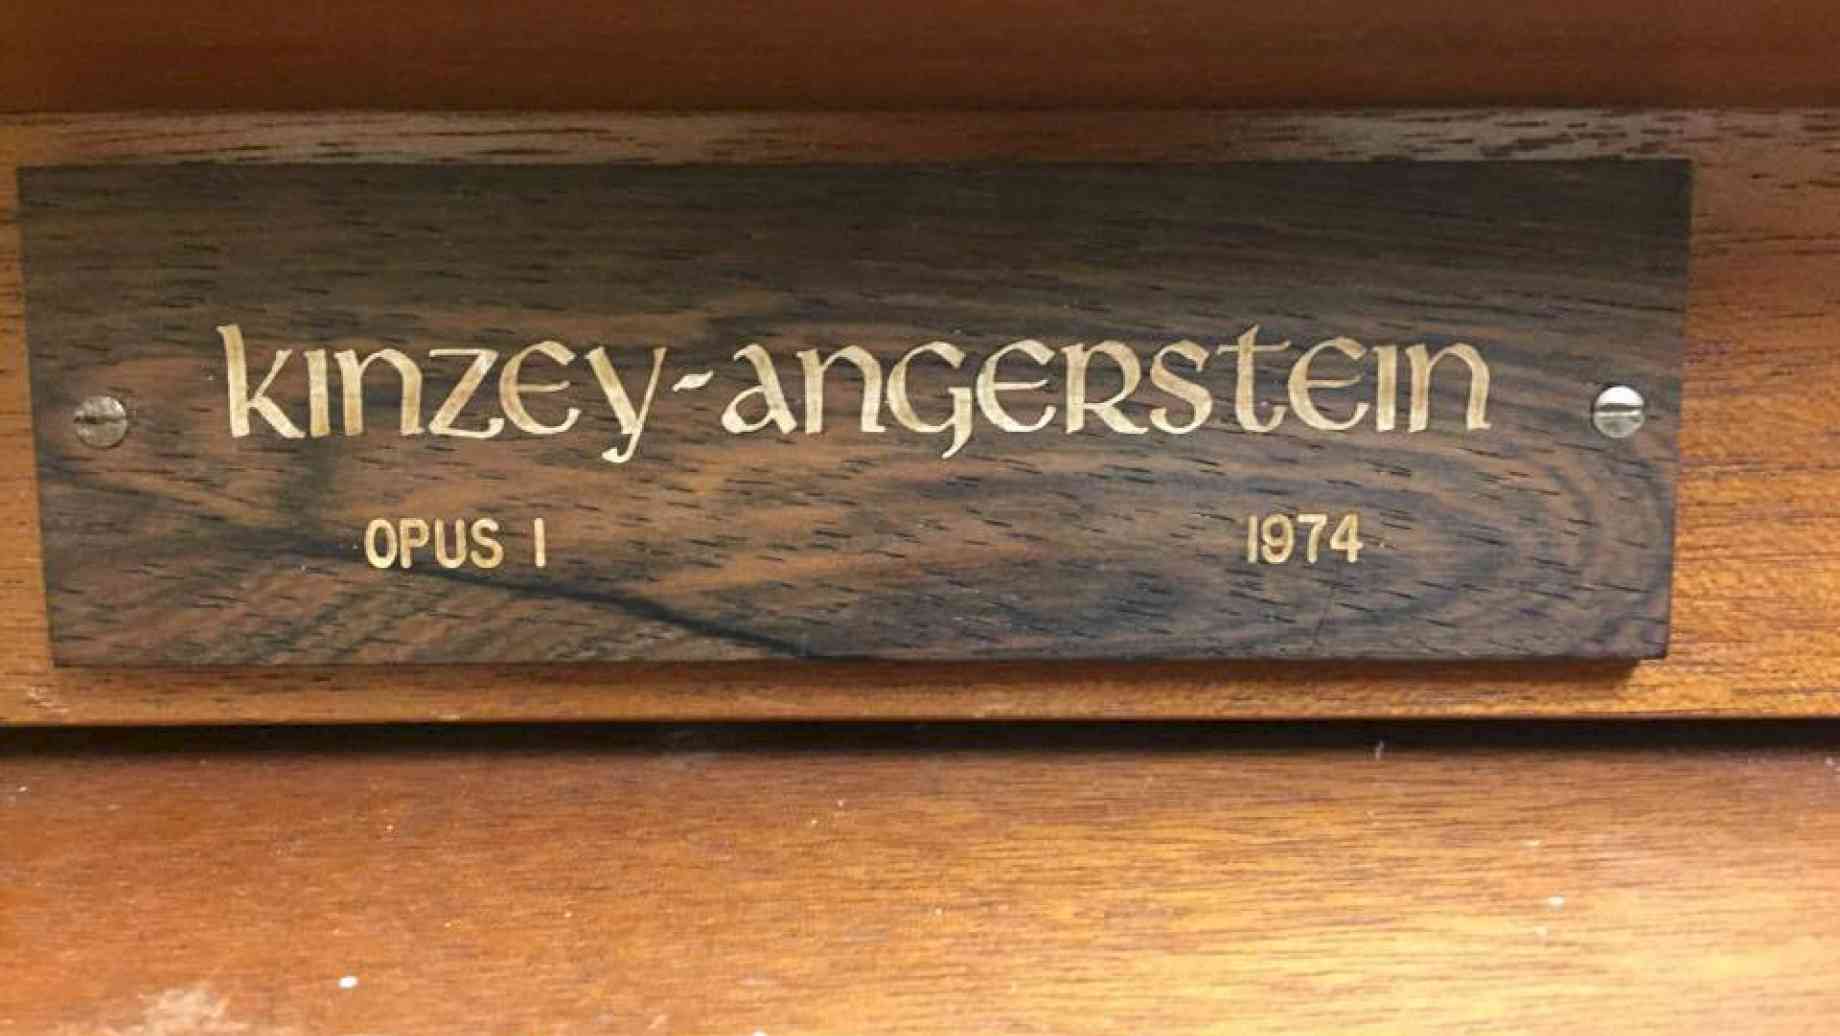 Kinzey-Angerstein, opus 1